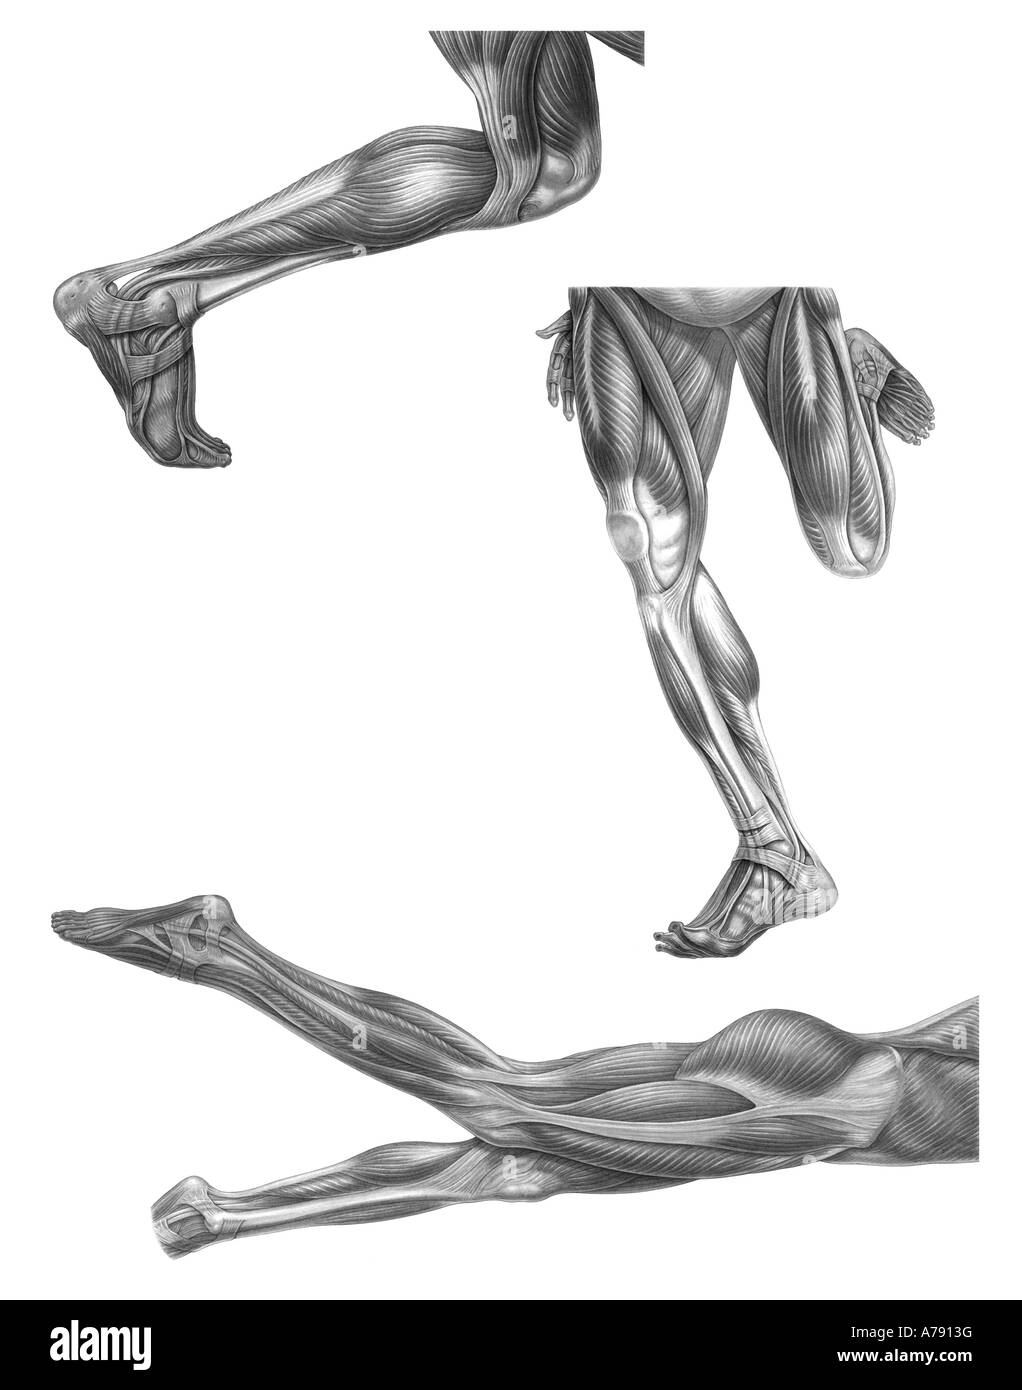 Eine Abbildung der menschlichen Beinmuskulatur beim laufen und Schwimmen verwendet. Stockfoto